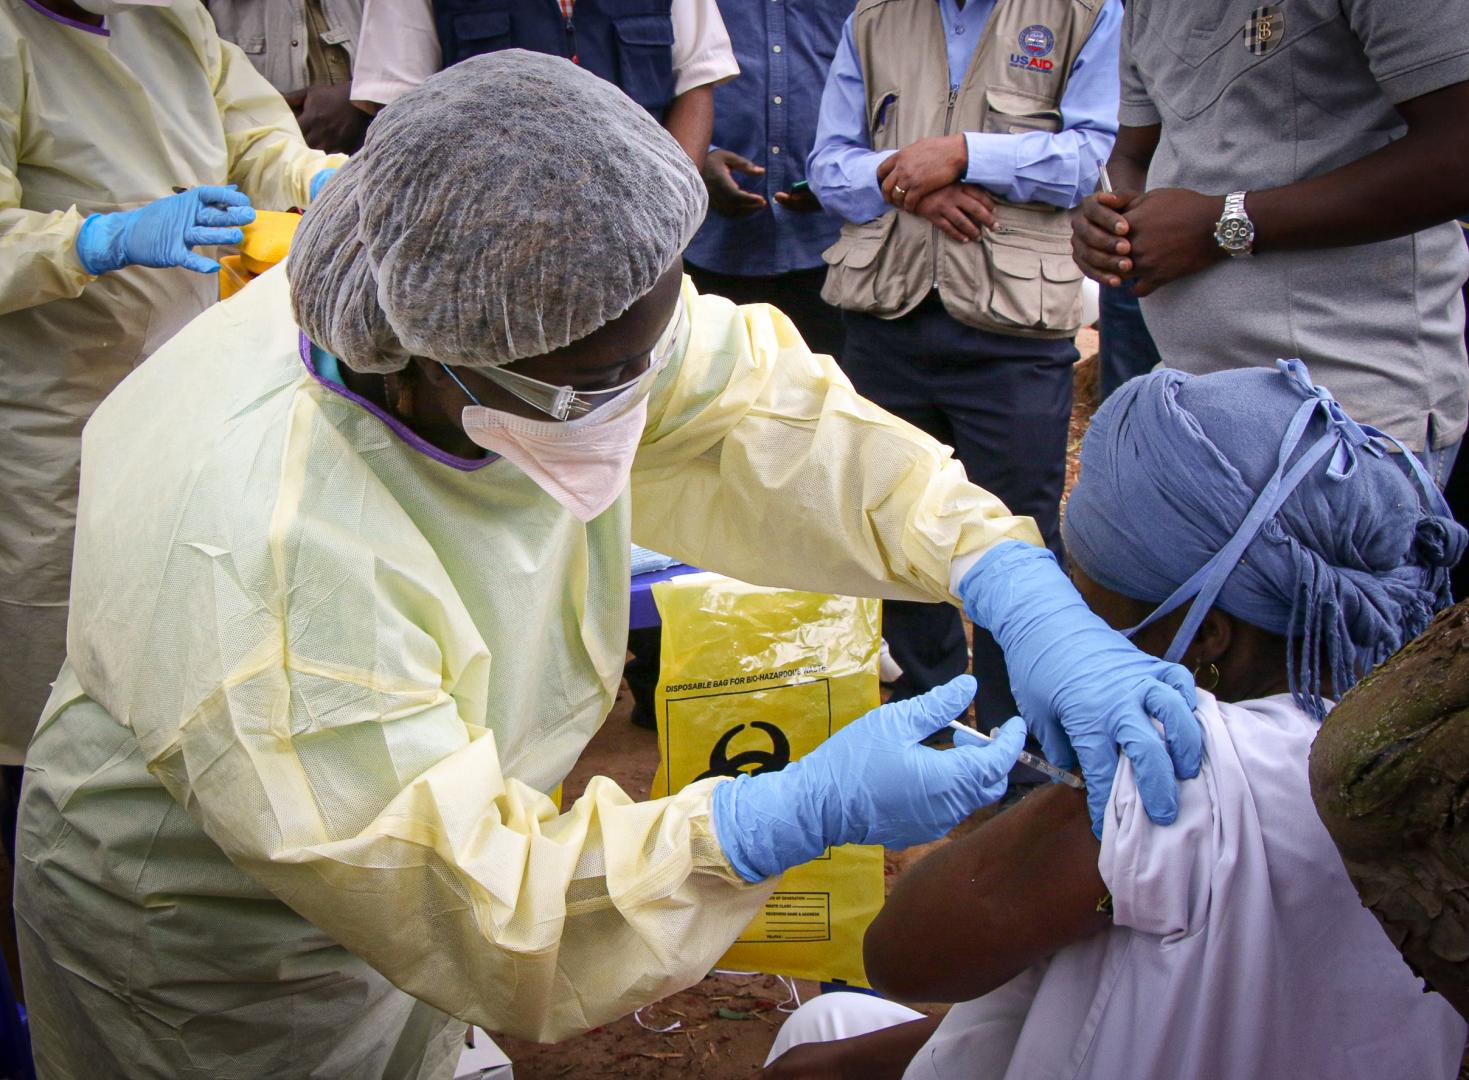 Démarrage de vaccination contre Ebola